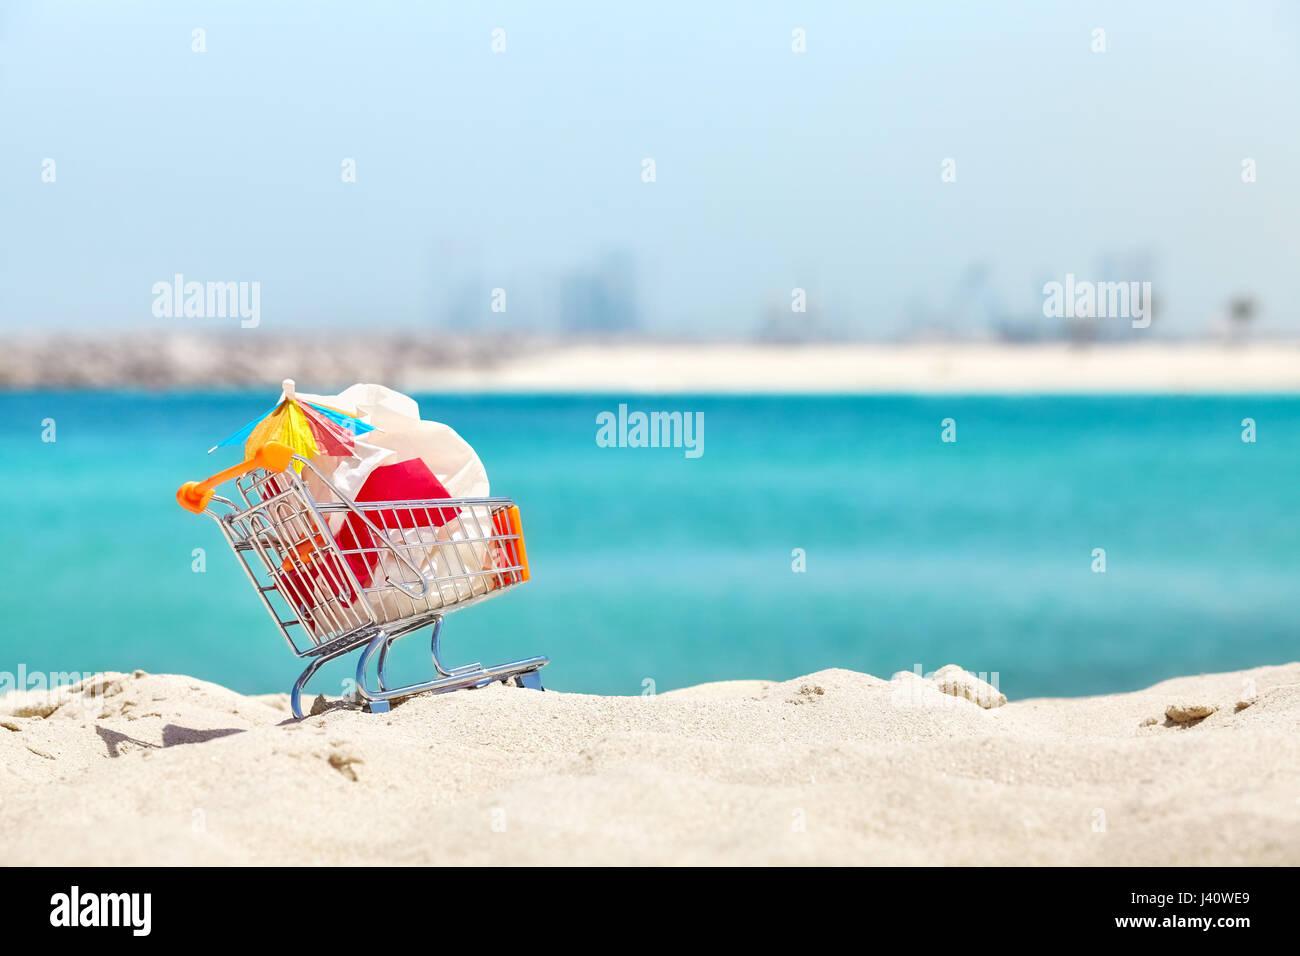 Miniatur-Einkaufswagen mit Plastiktüte und cocktail Regenschirm von Tourist an einem tropischen Strand, Umweltverschmutzung Konzept Bild links. Stockfoto